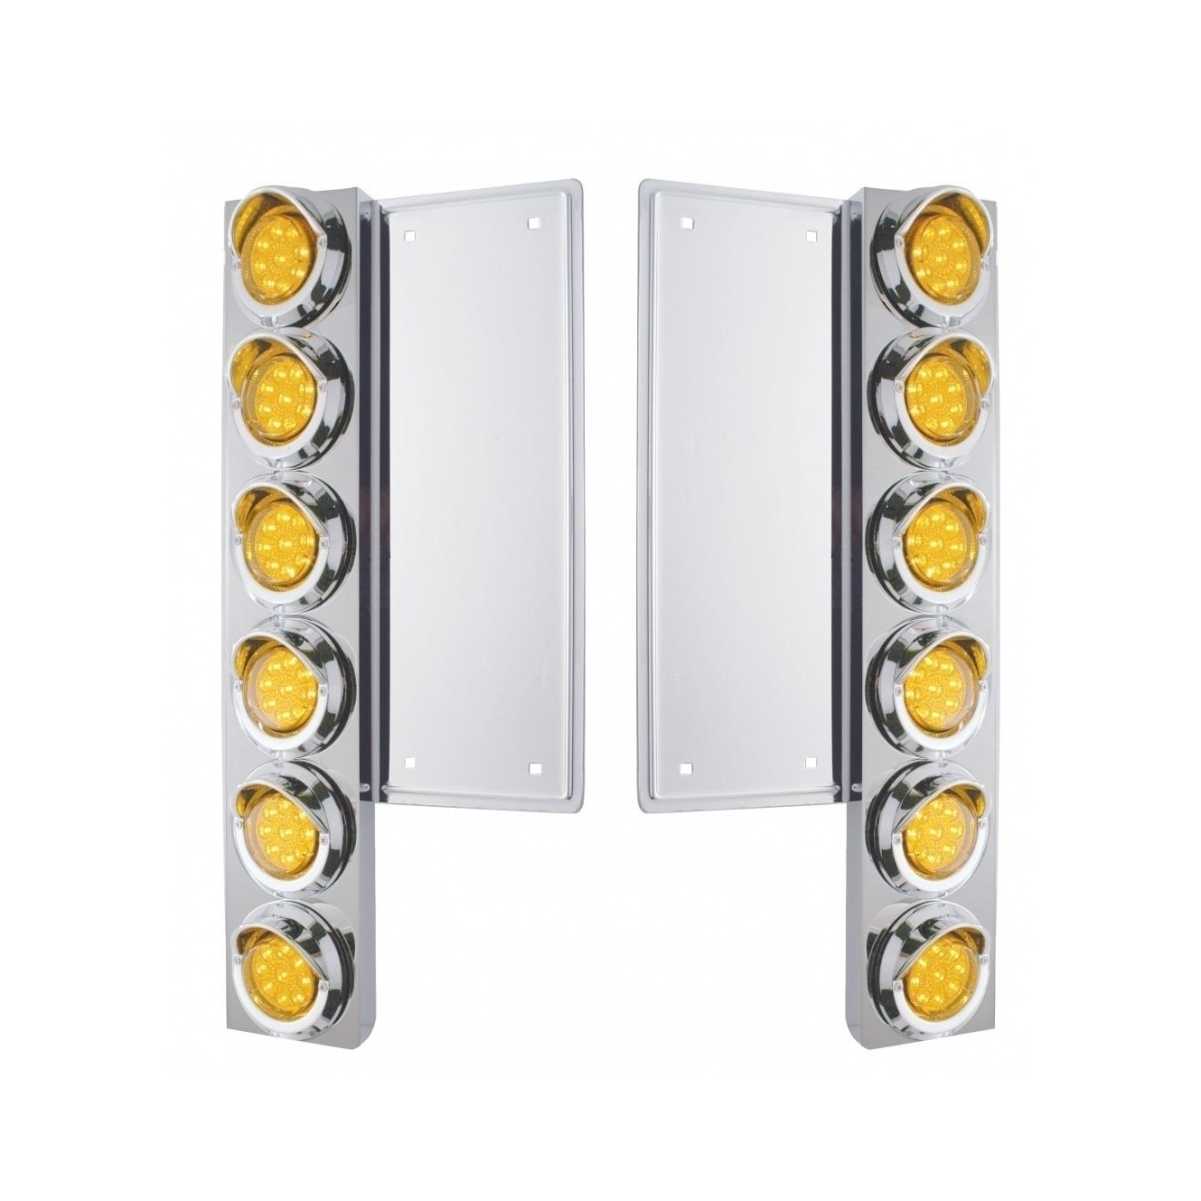 Freightliner Air Cleaner Bracket w/ LED Lights & Visors - Amber LED/Amber Lens